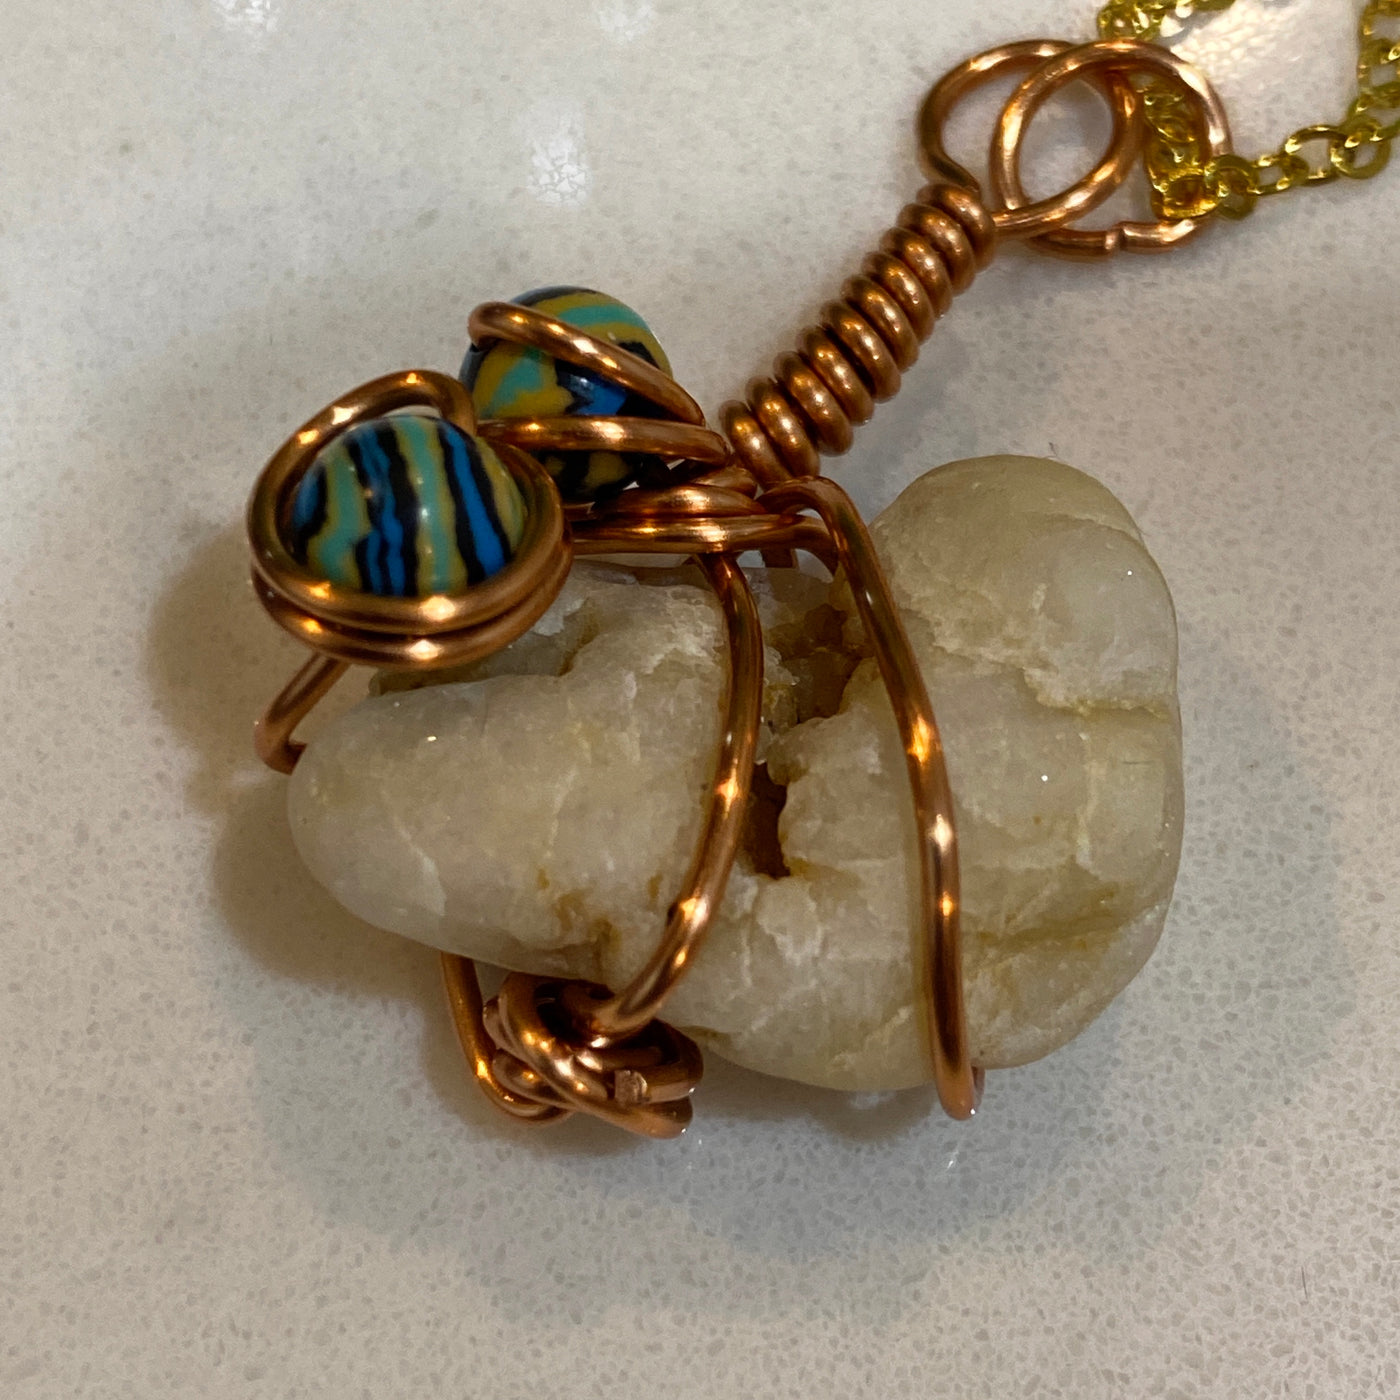 White natural stone, blue malachite and wire. Small pendant.